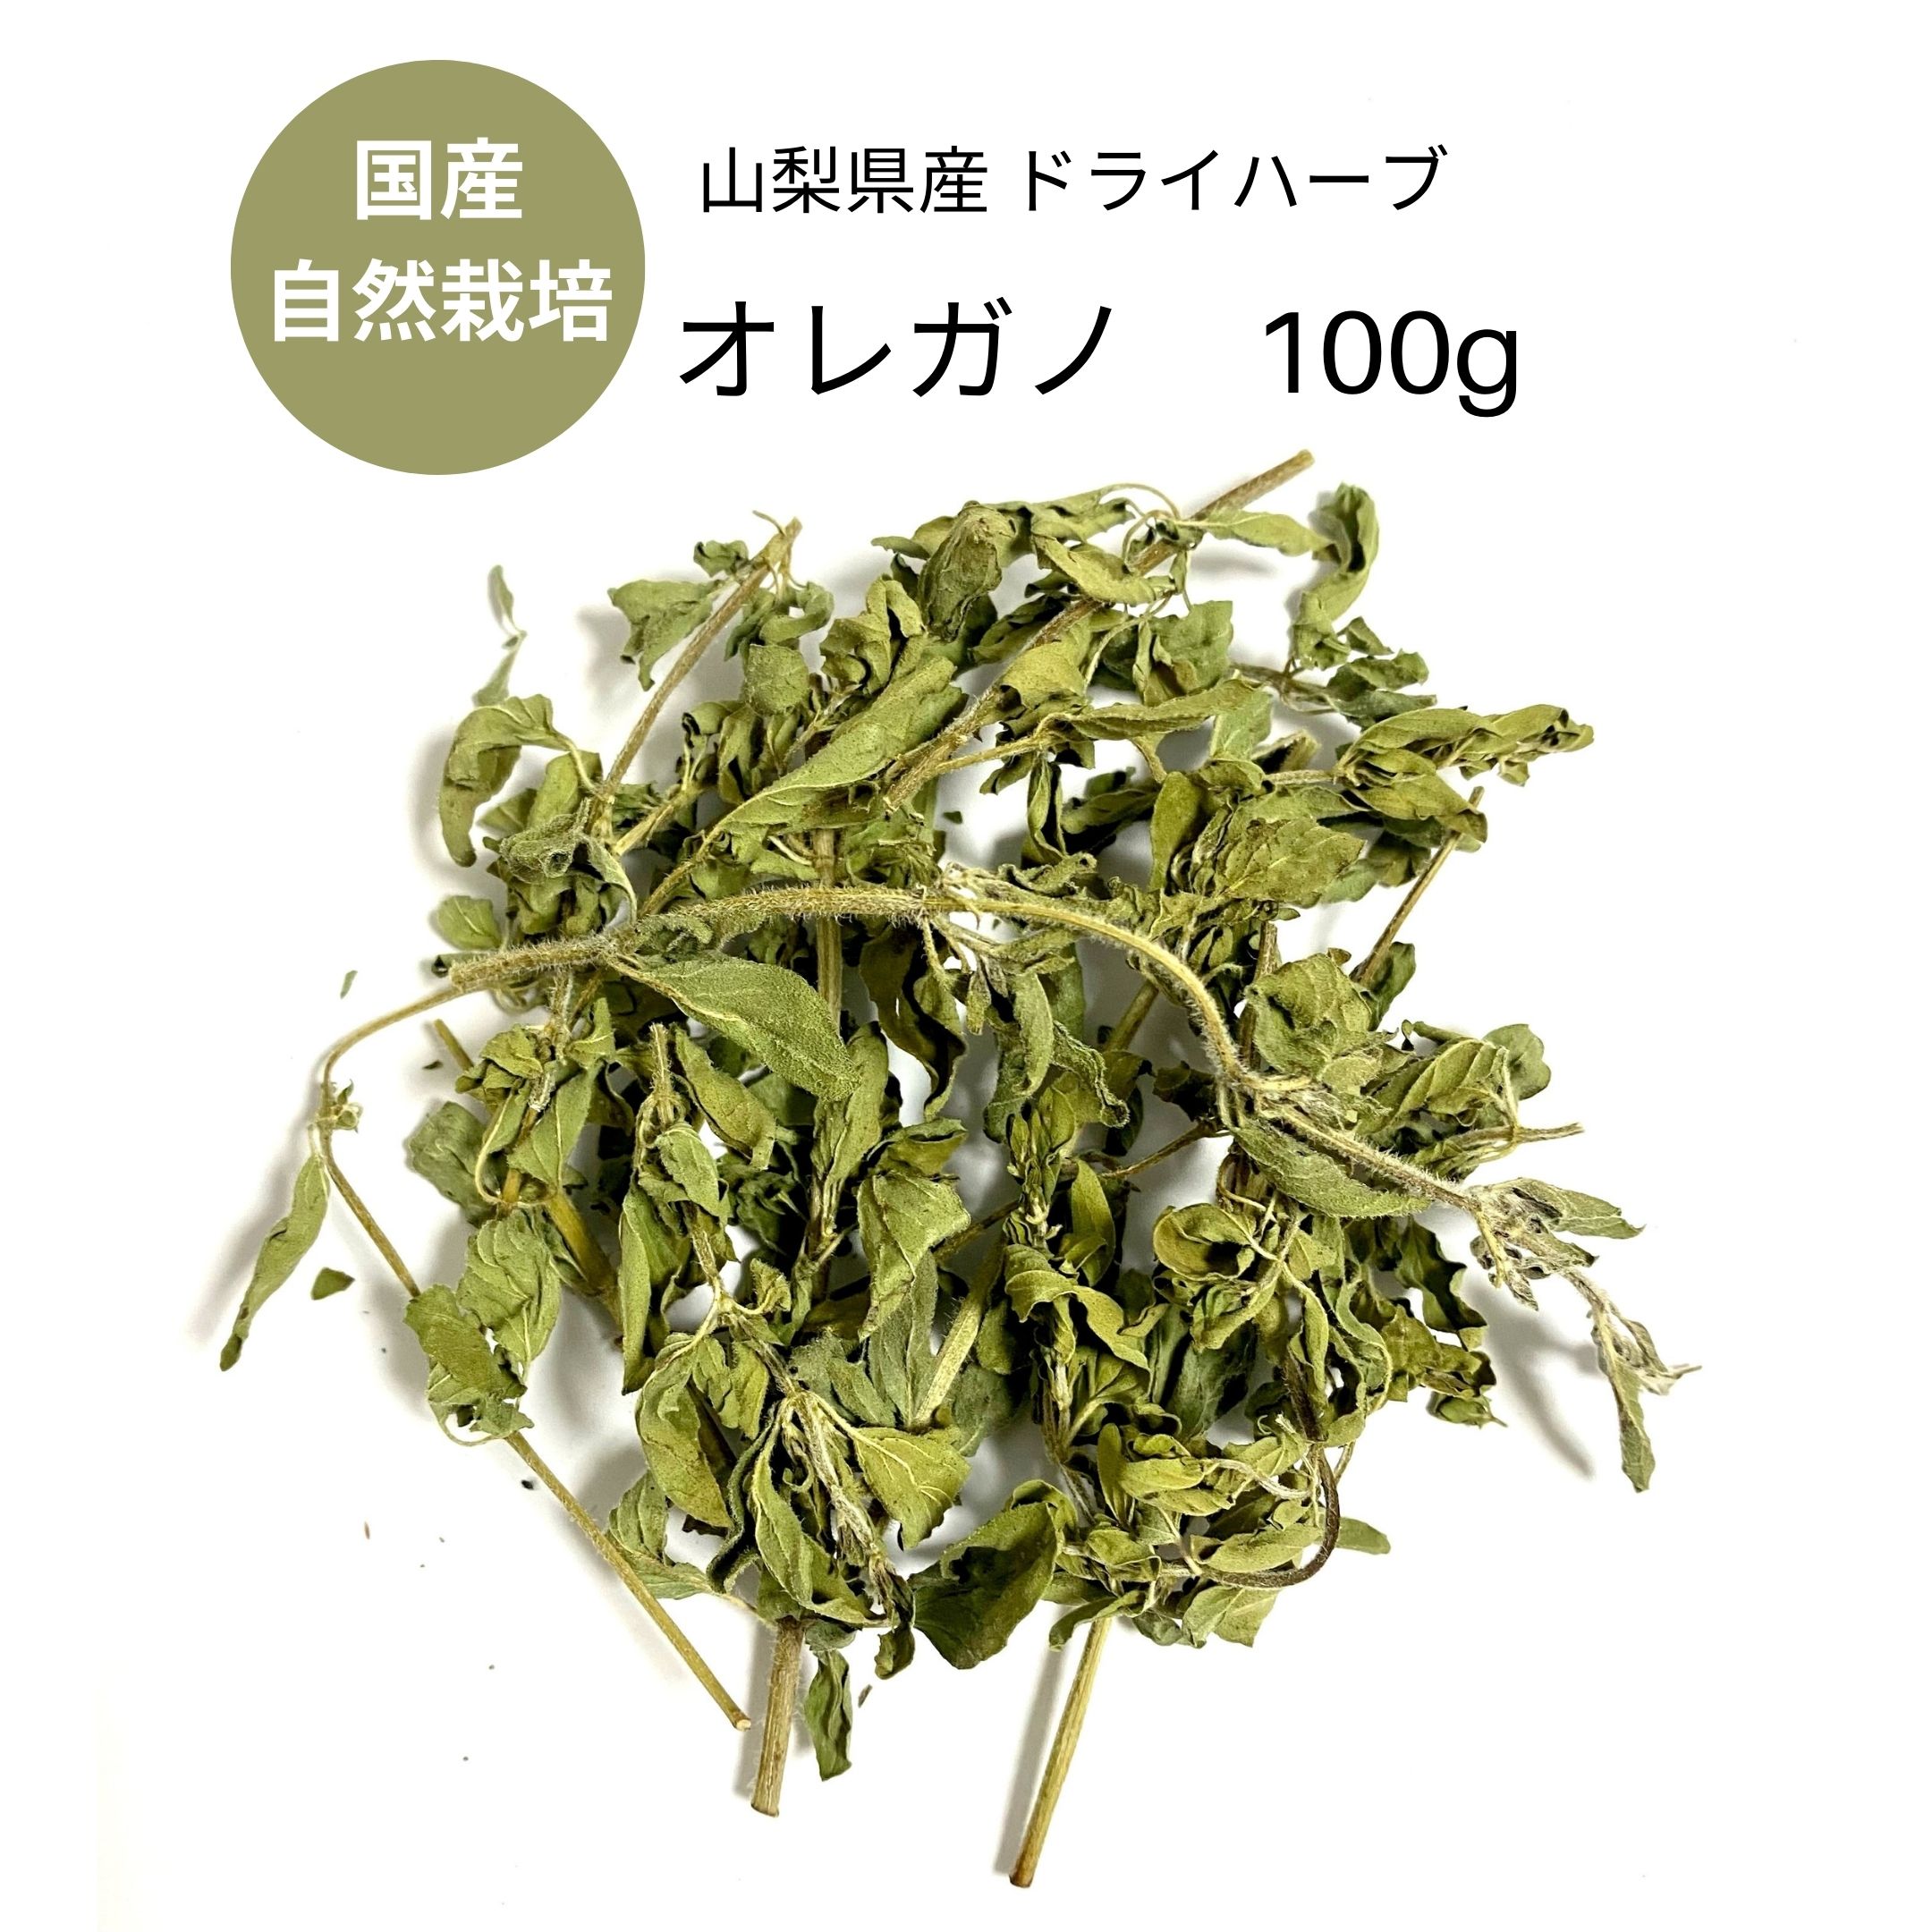 楽天市場 フレッシュハーブ オレガノ Fuji Herbs